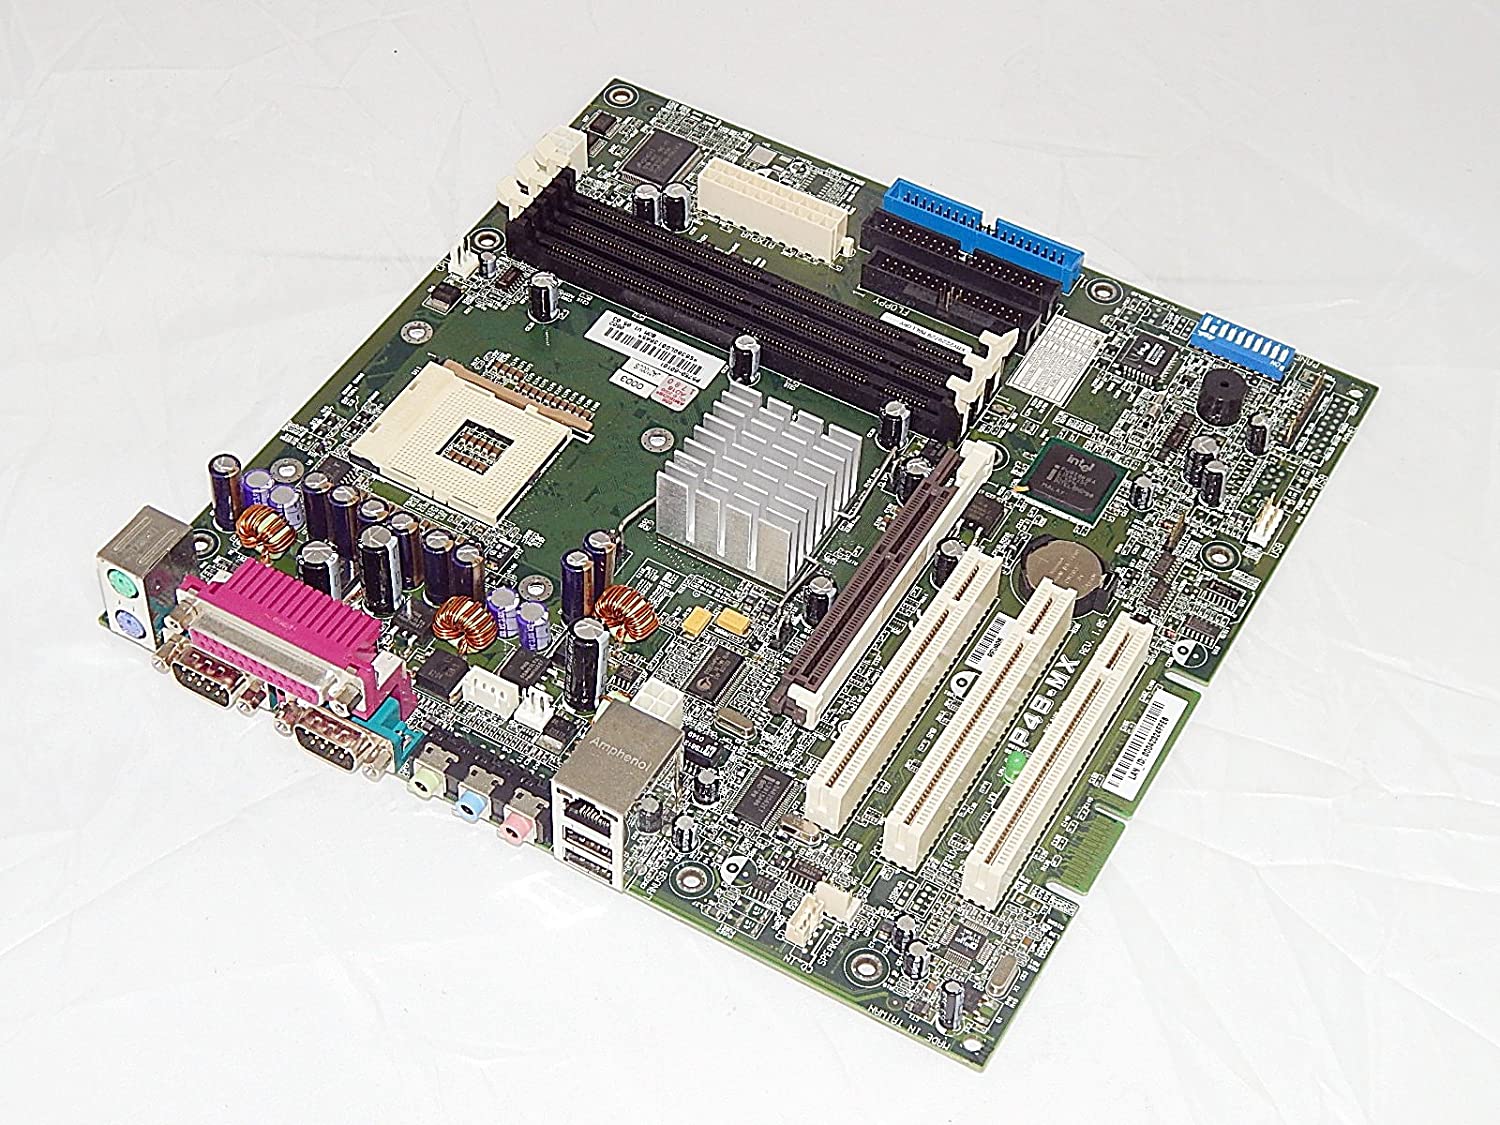 Asus P4B-MX motherboard